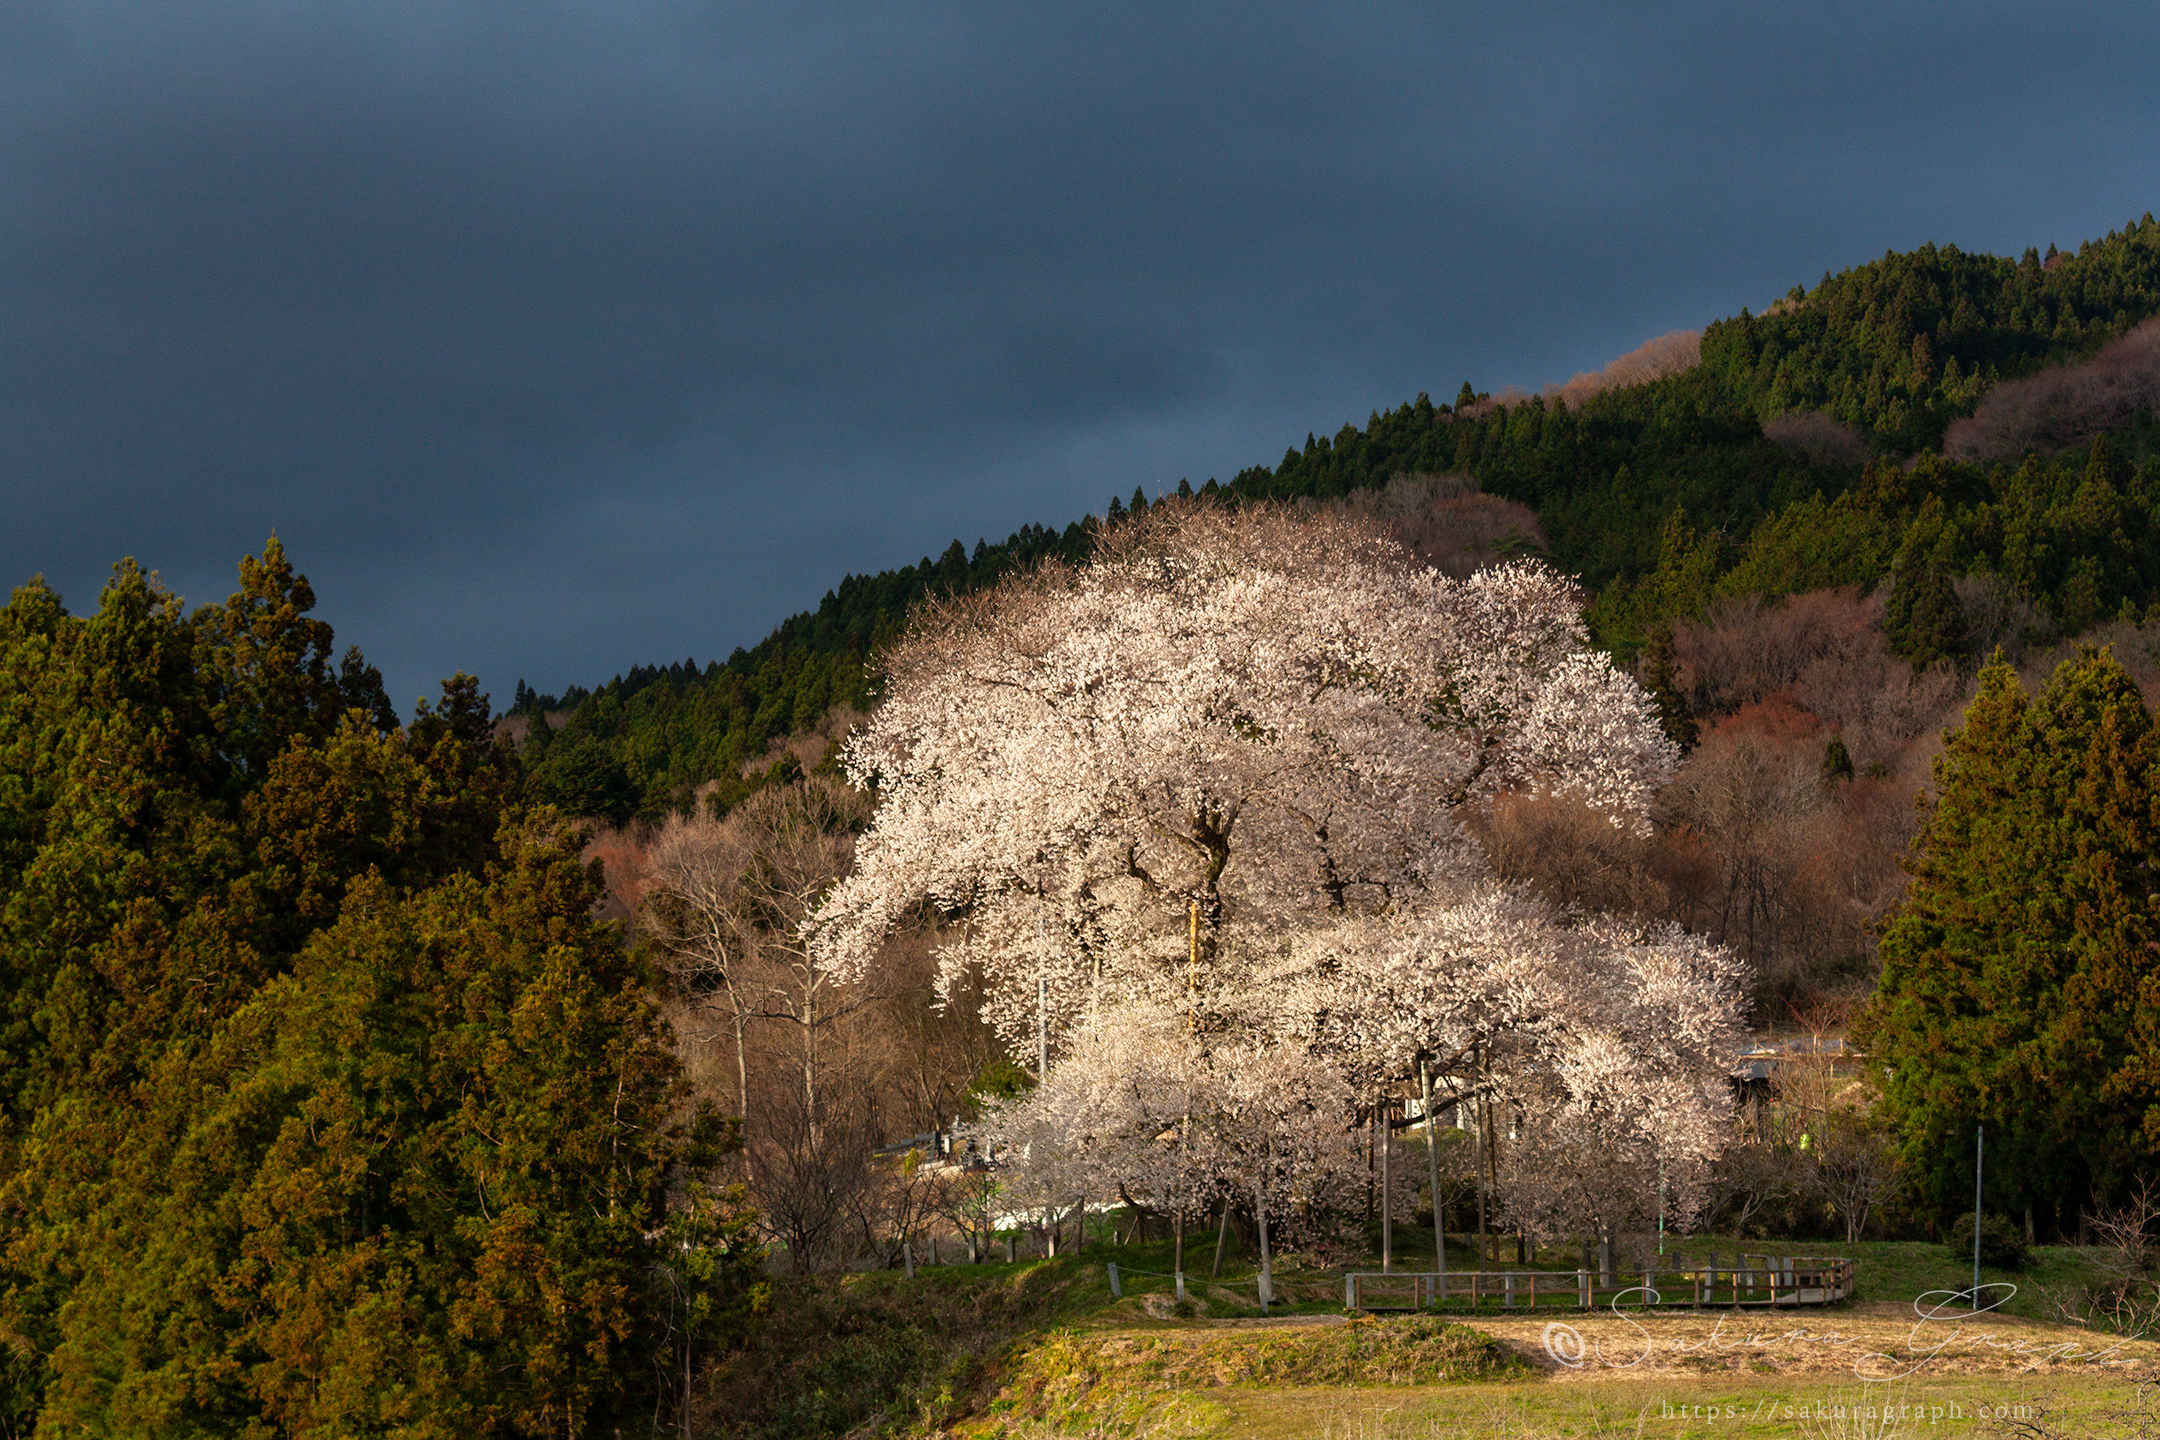 戸津辺の桜